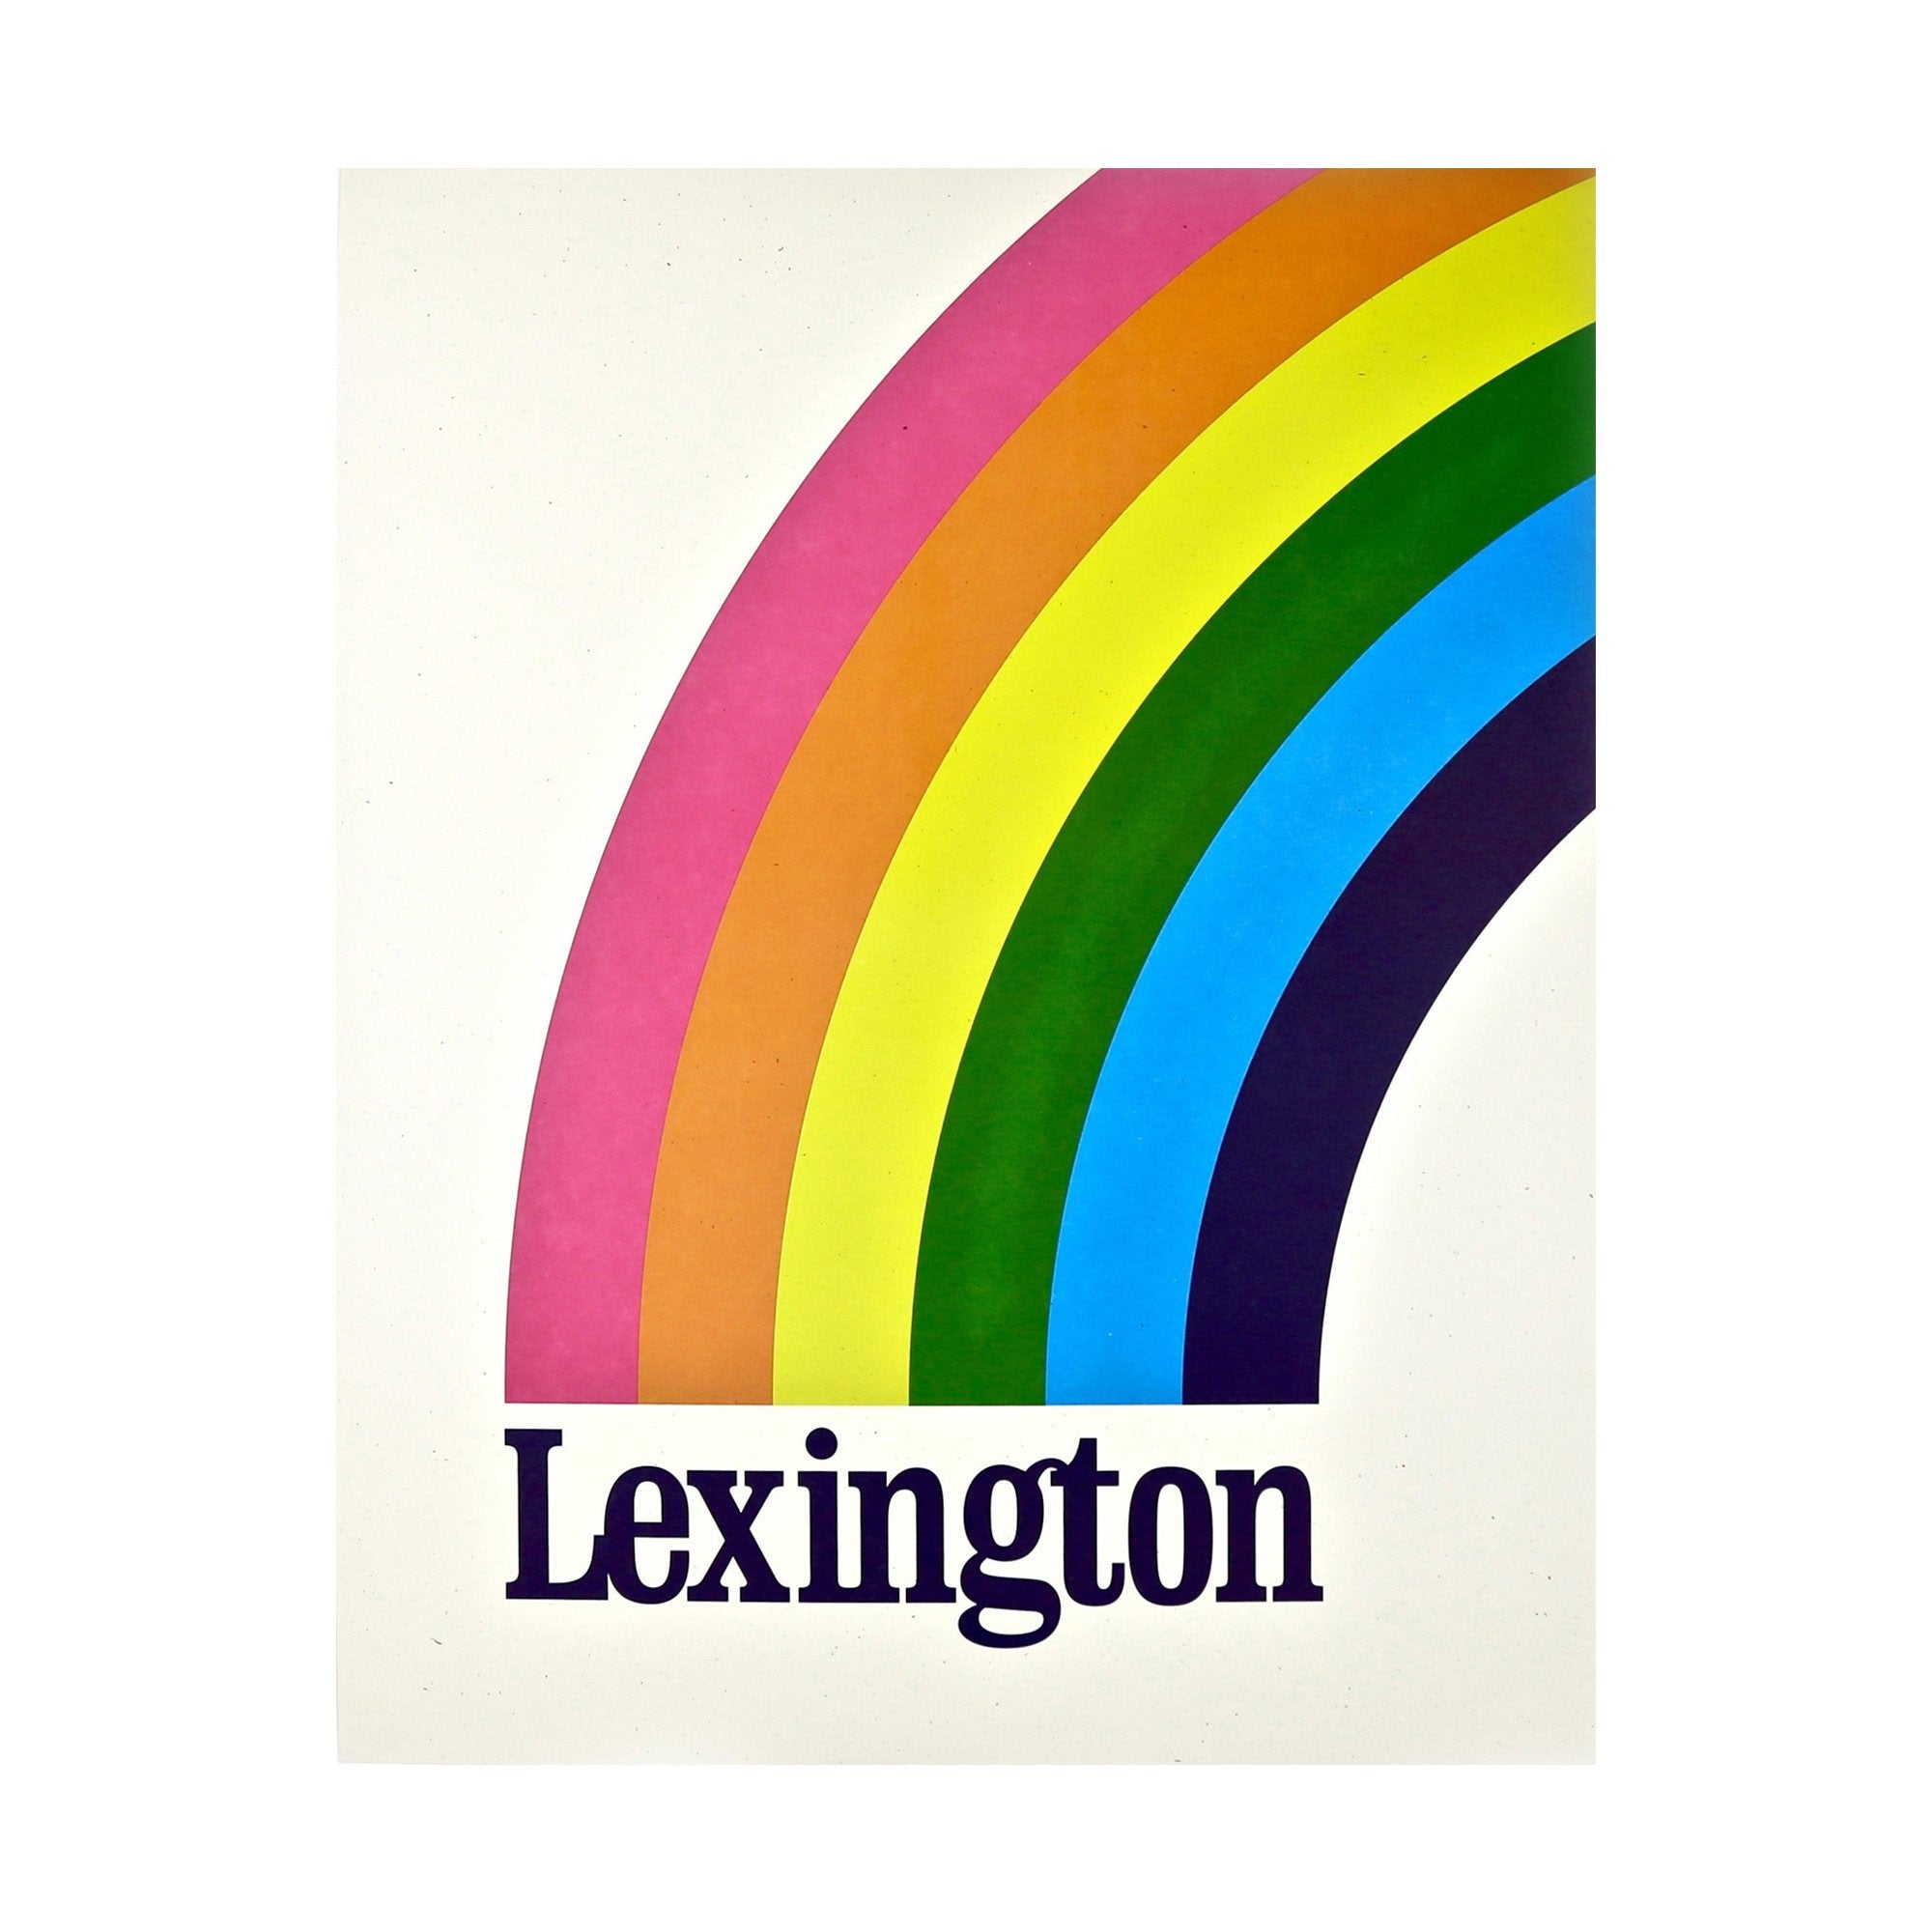 The Lexington Rainbow Print